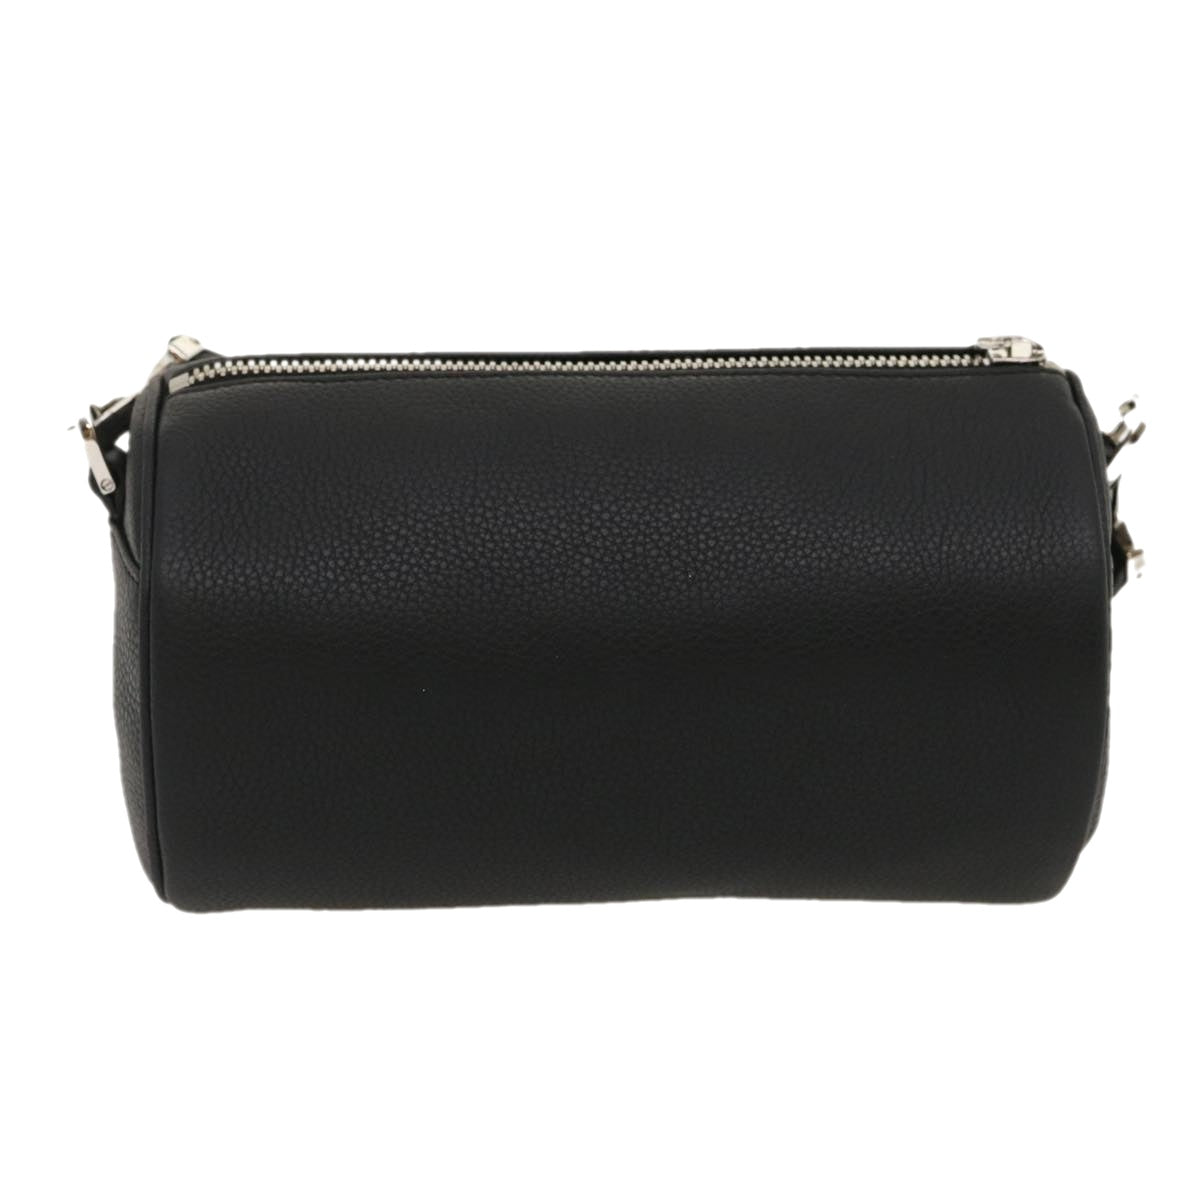 Christian Dior Atelier Roller Bag Shoulder Bag Leather Black Auth 29708A